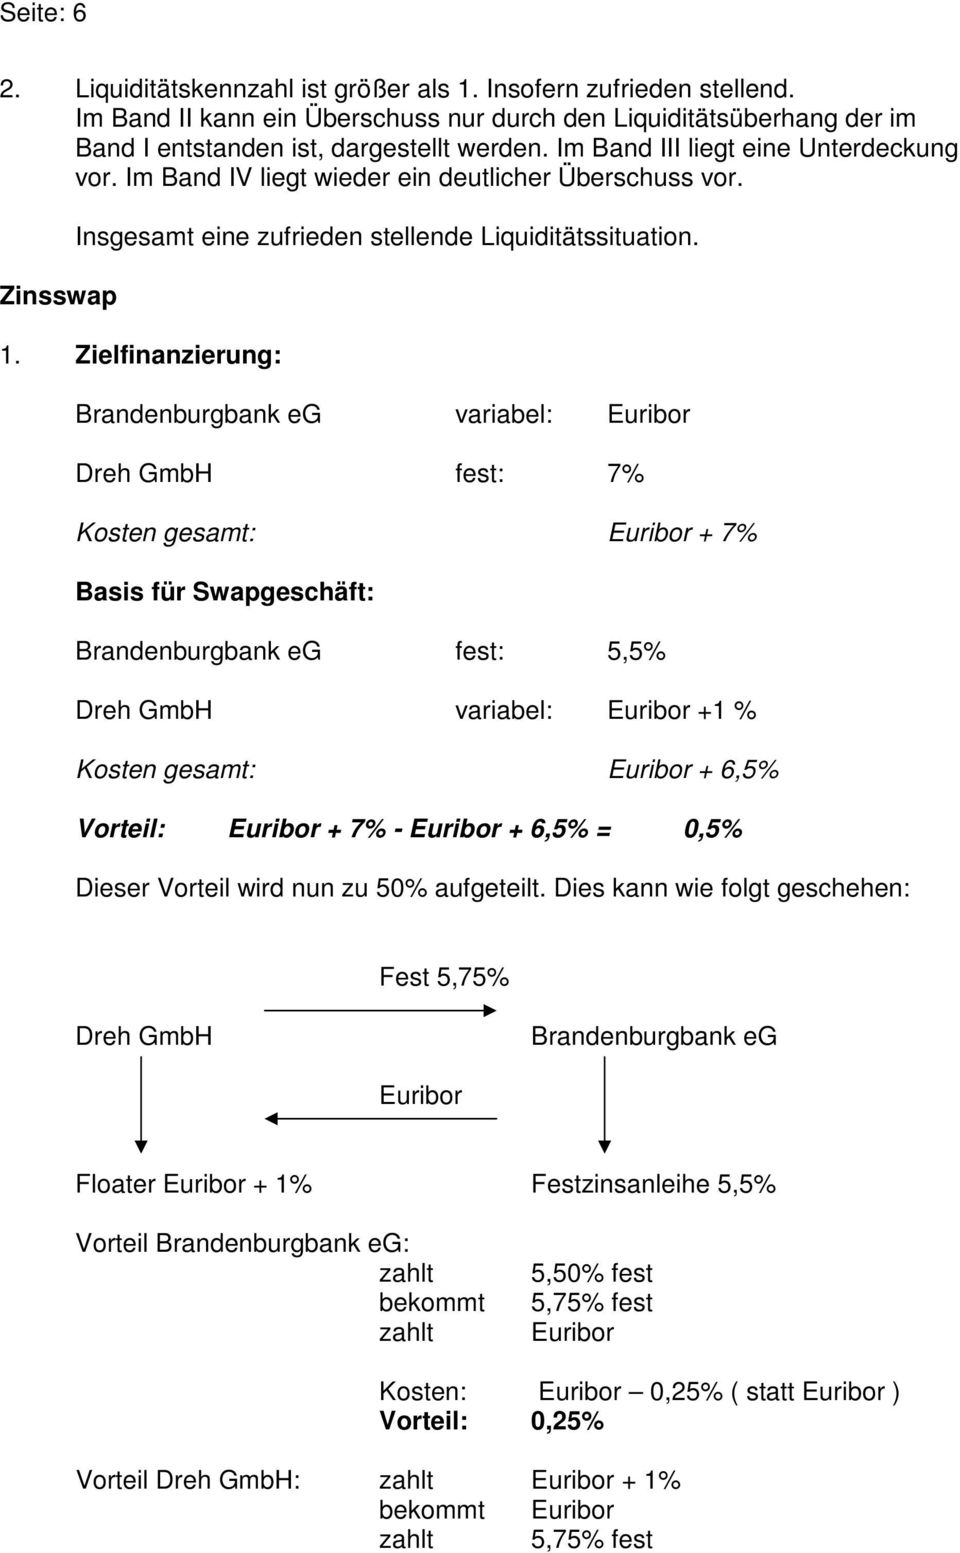 Zielfinanzierung: Brandenburgbank eg variabel: Euribor Dreh GmbH fest: 7% Kosten gesamt: Euribor + 7% Basis für Swapgeschäft: Brandenburgbank eg fest: 5,5% Dreh GmbH variabel: Euribor +1 % Kosten